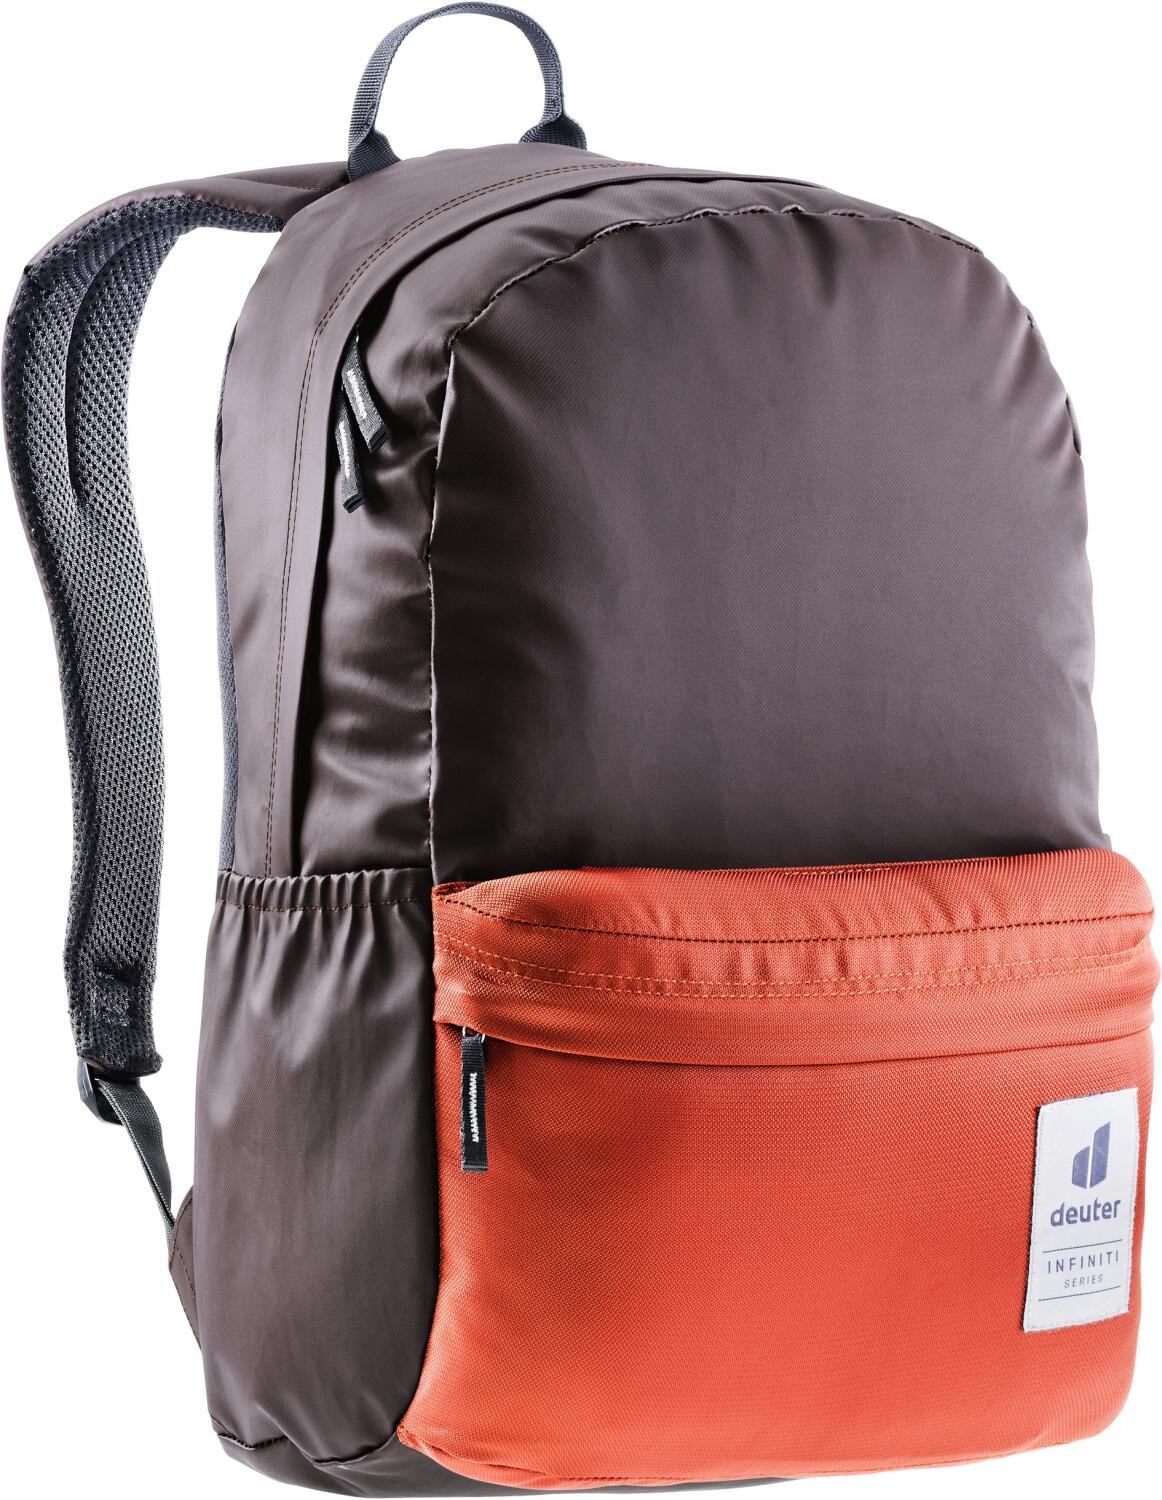 Deuter Infiniti Backpack Lifestyle Rucksack (5578 aubergine/lava) von Deuter